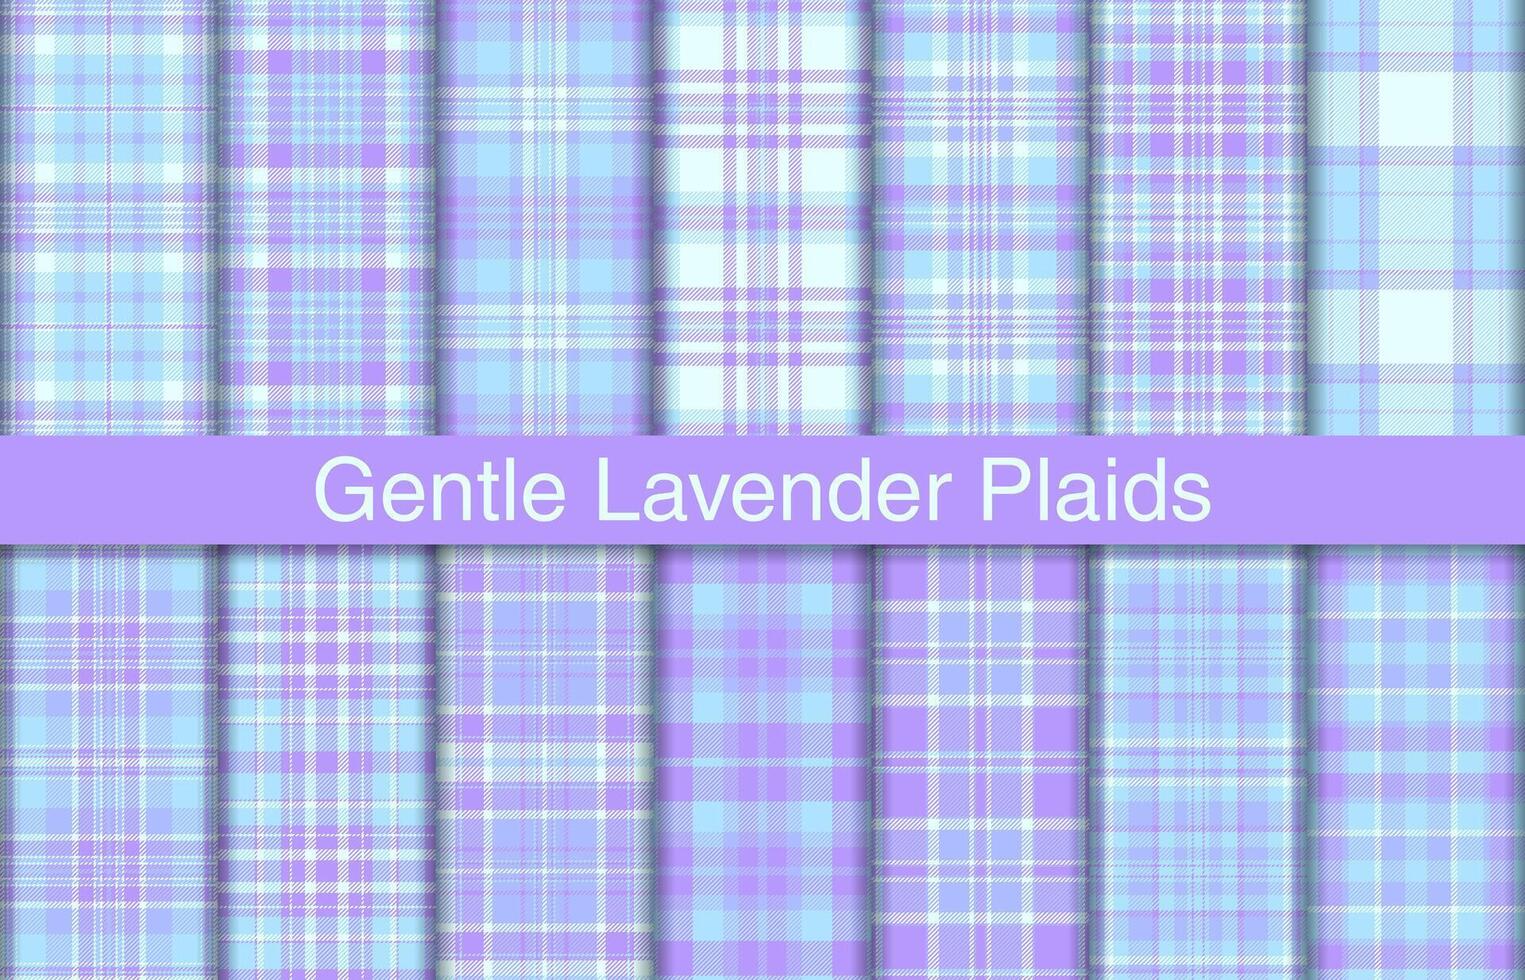 sanft Lavendel Plaid Bündel, Textil- Design, kariert Stoff Muster zum Shirt, Kleid, Anzug, Verpackung Papier drucken, Einladung und Geschenk Karte. vektor